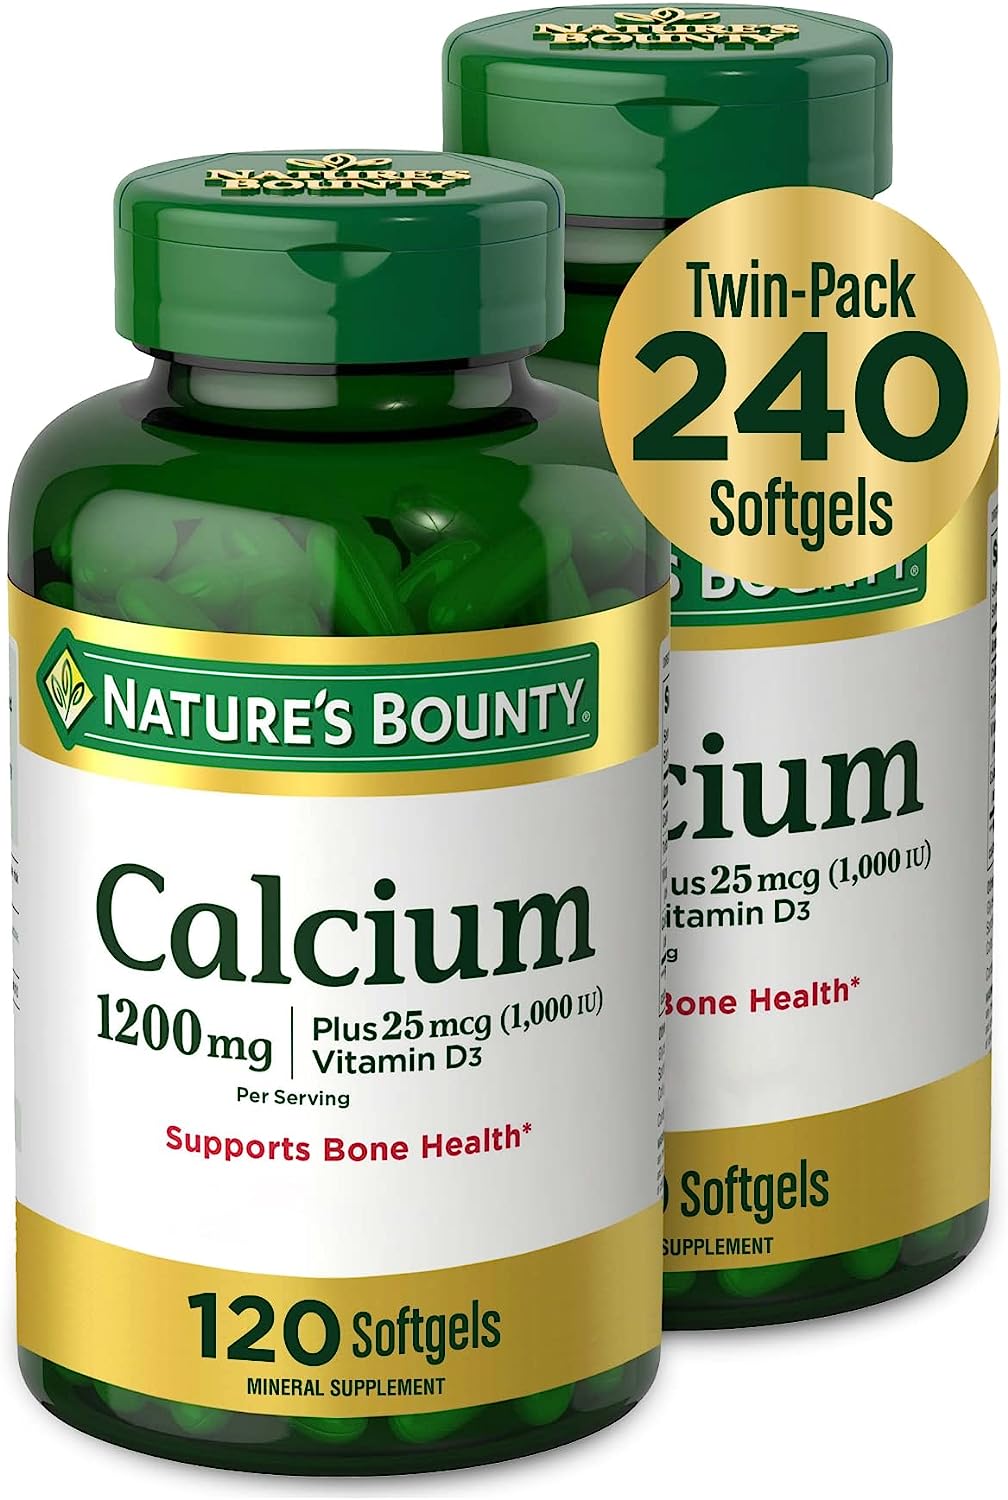 Nature’s Bounty Calcium Plus 1000 IU Vitamin D3, [...]